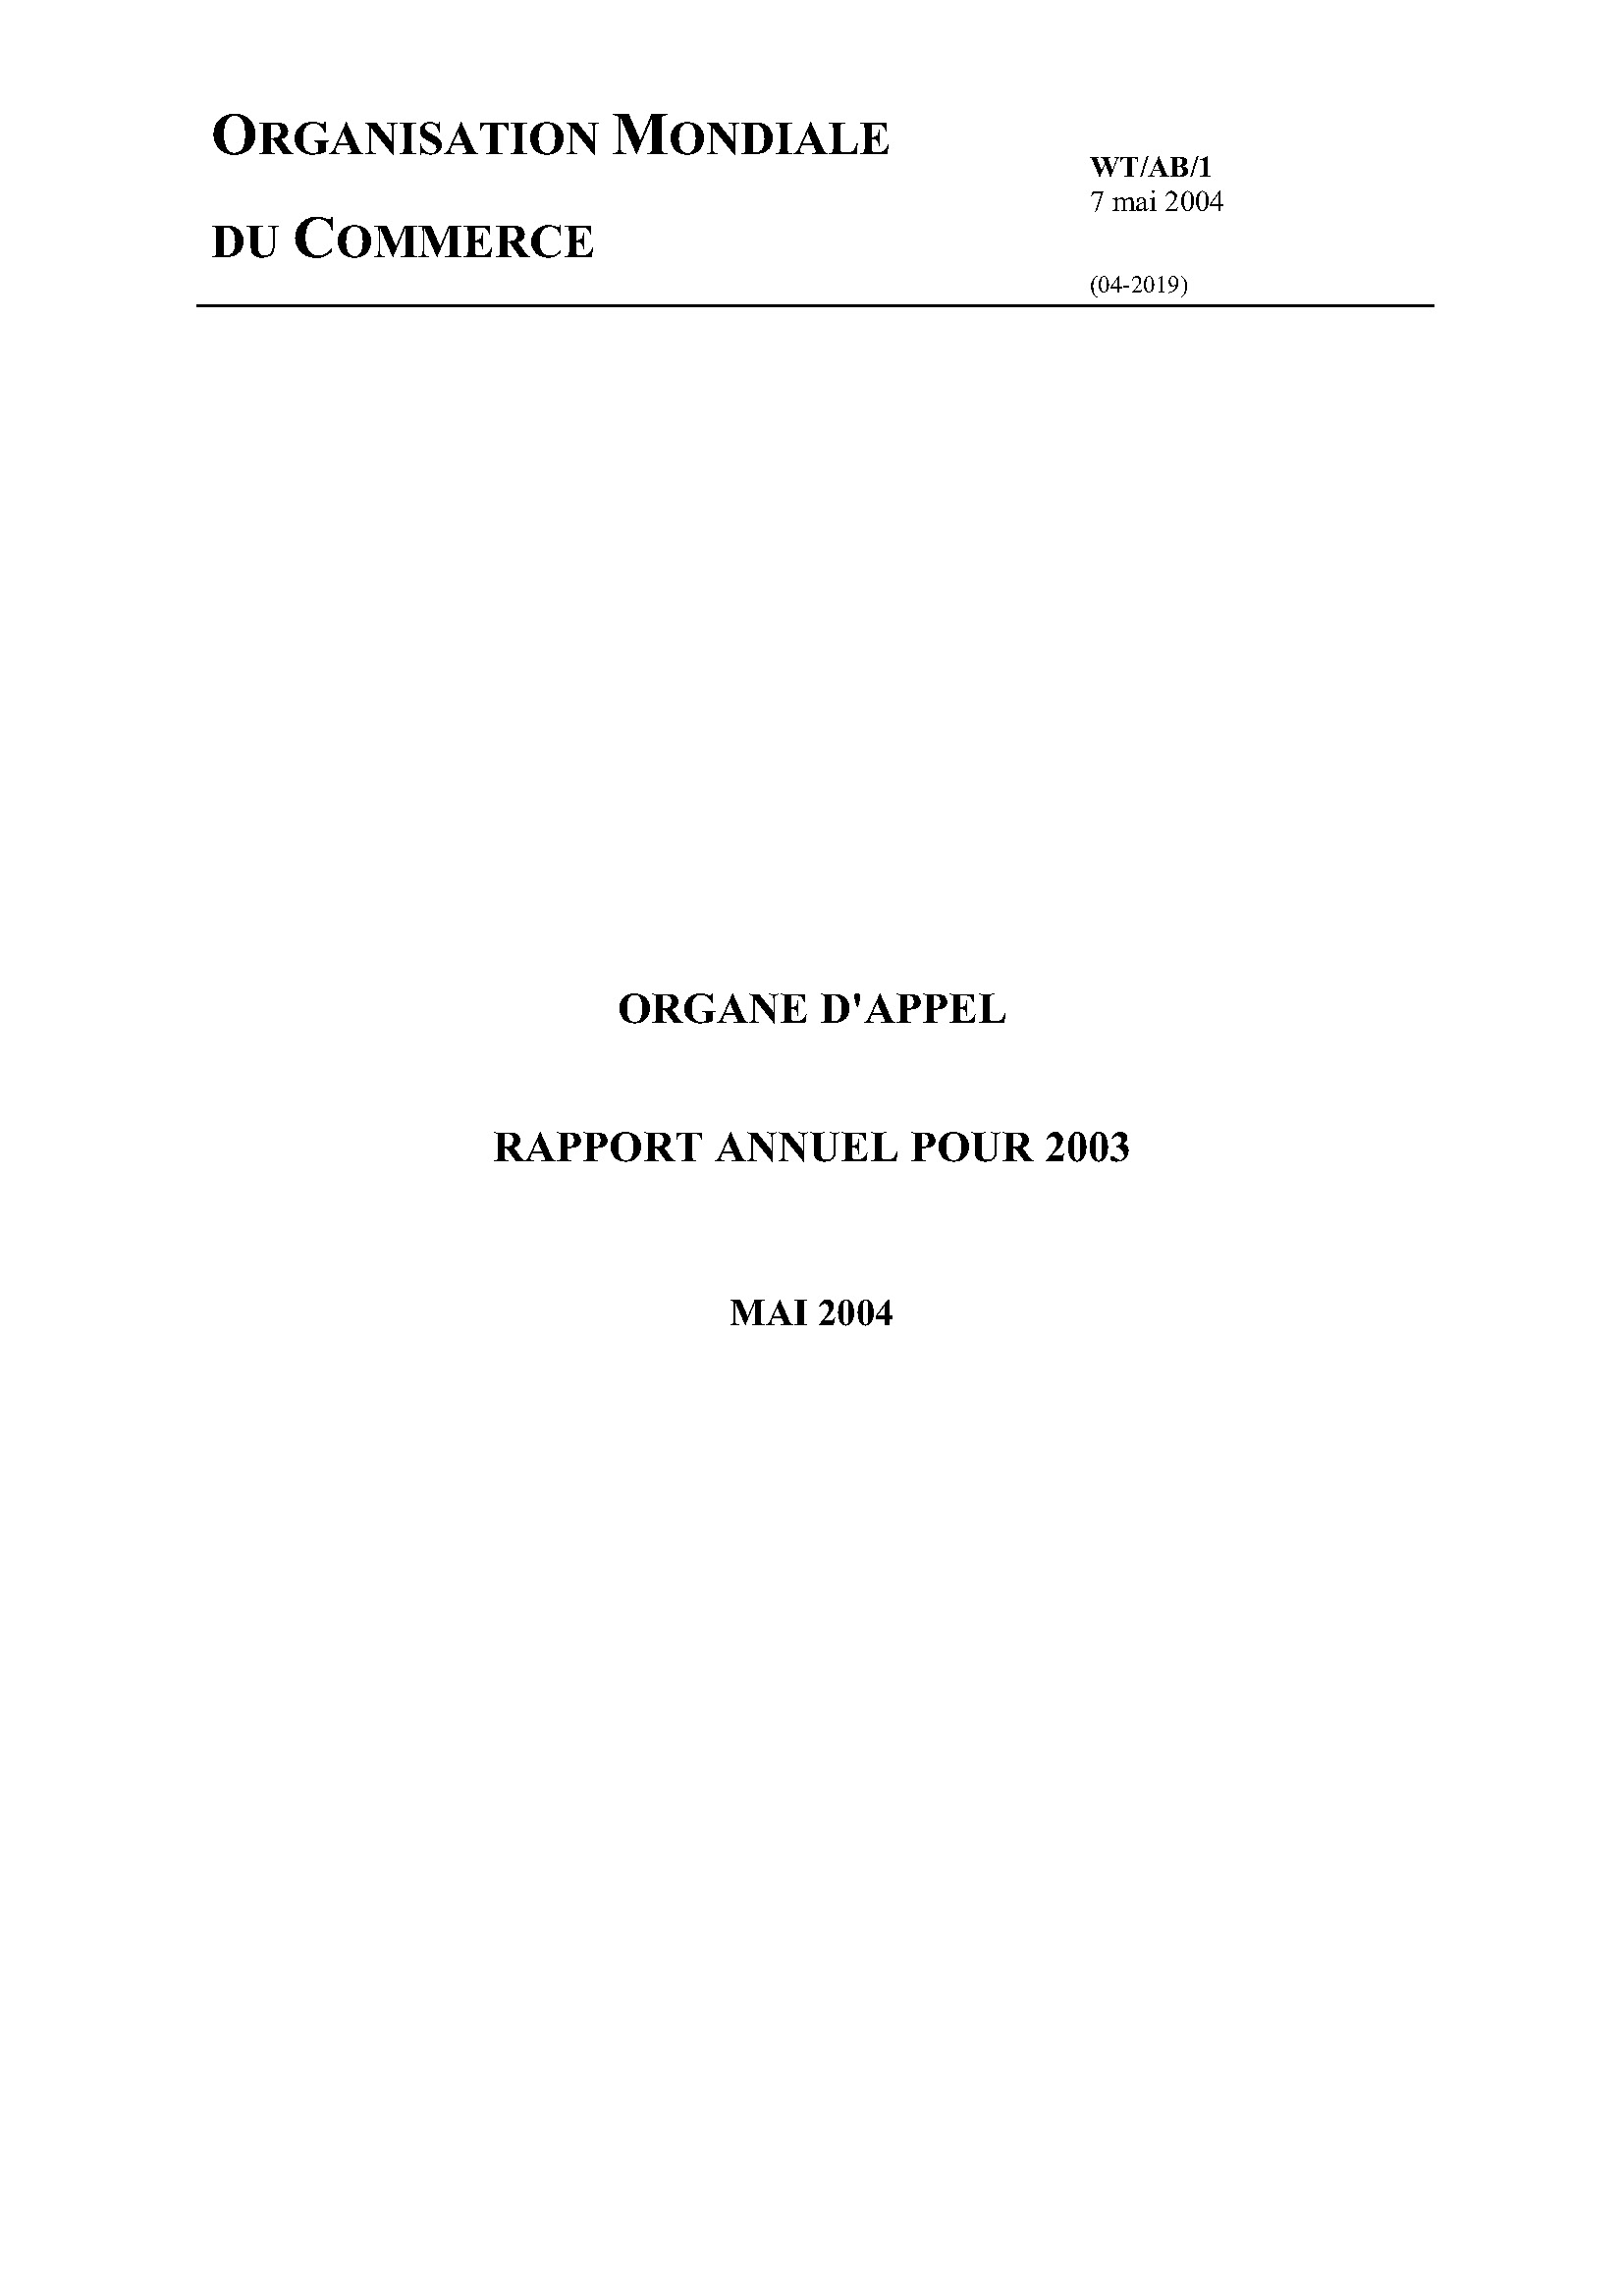 image of Rapport annuel de l’organe d’appel pour 2003